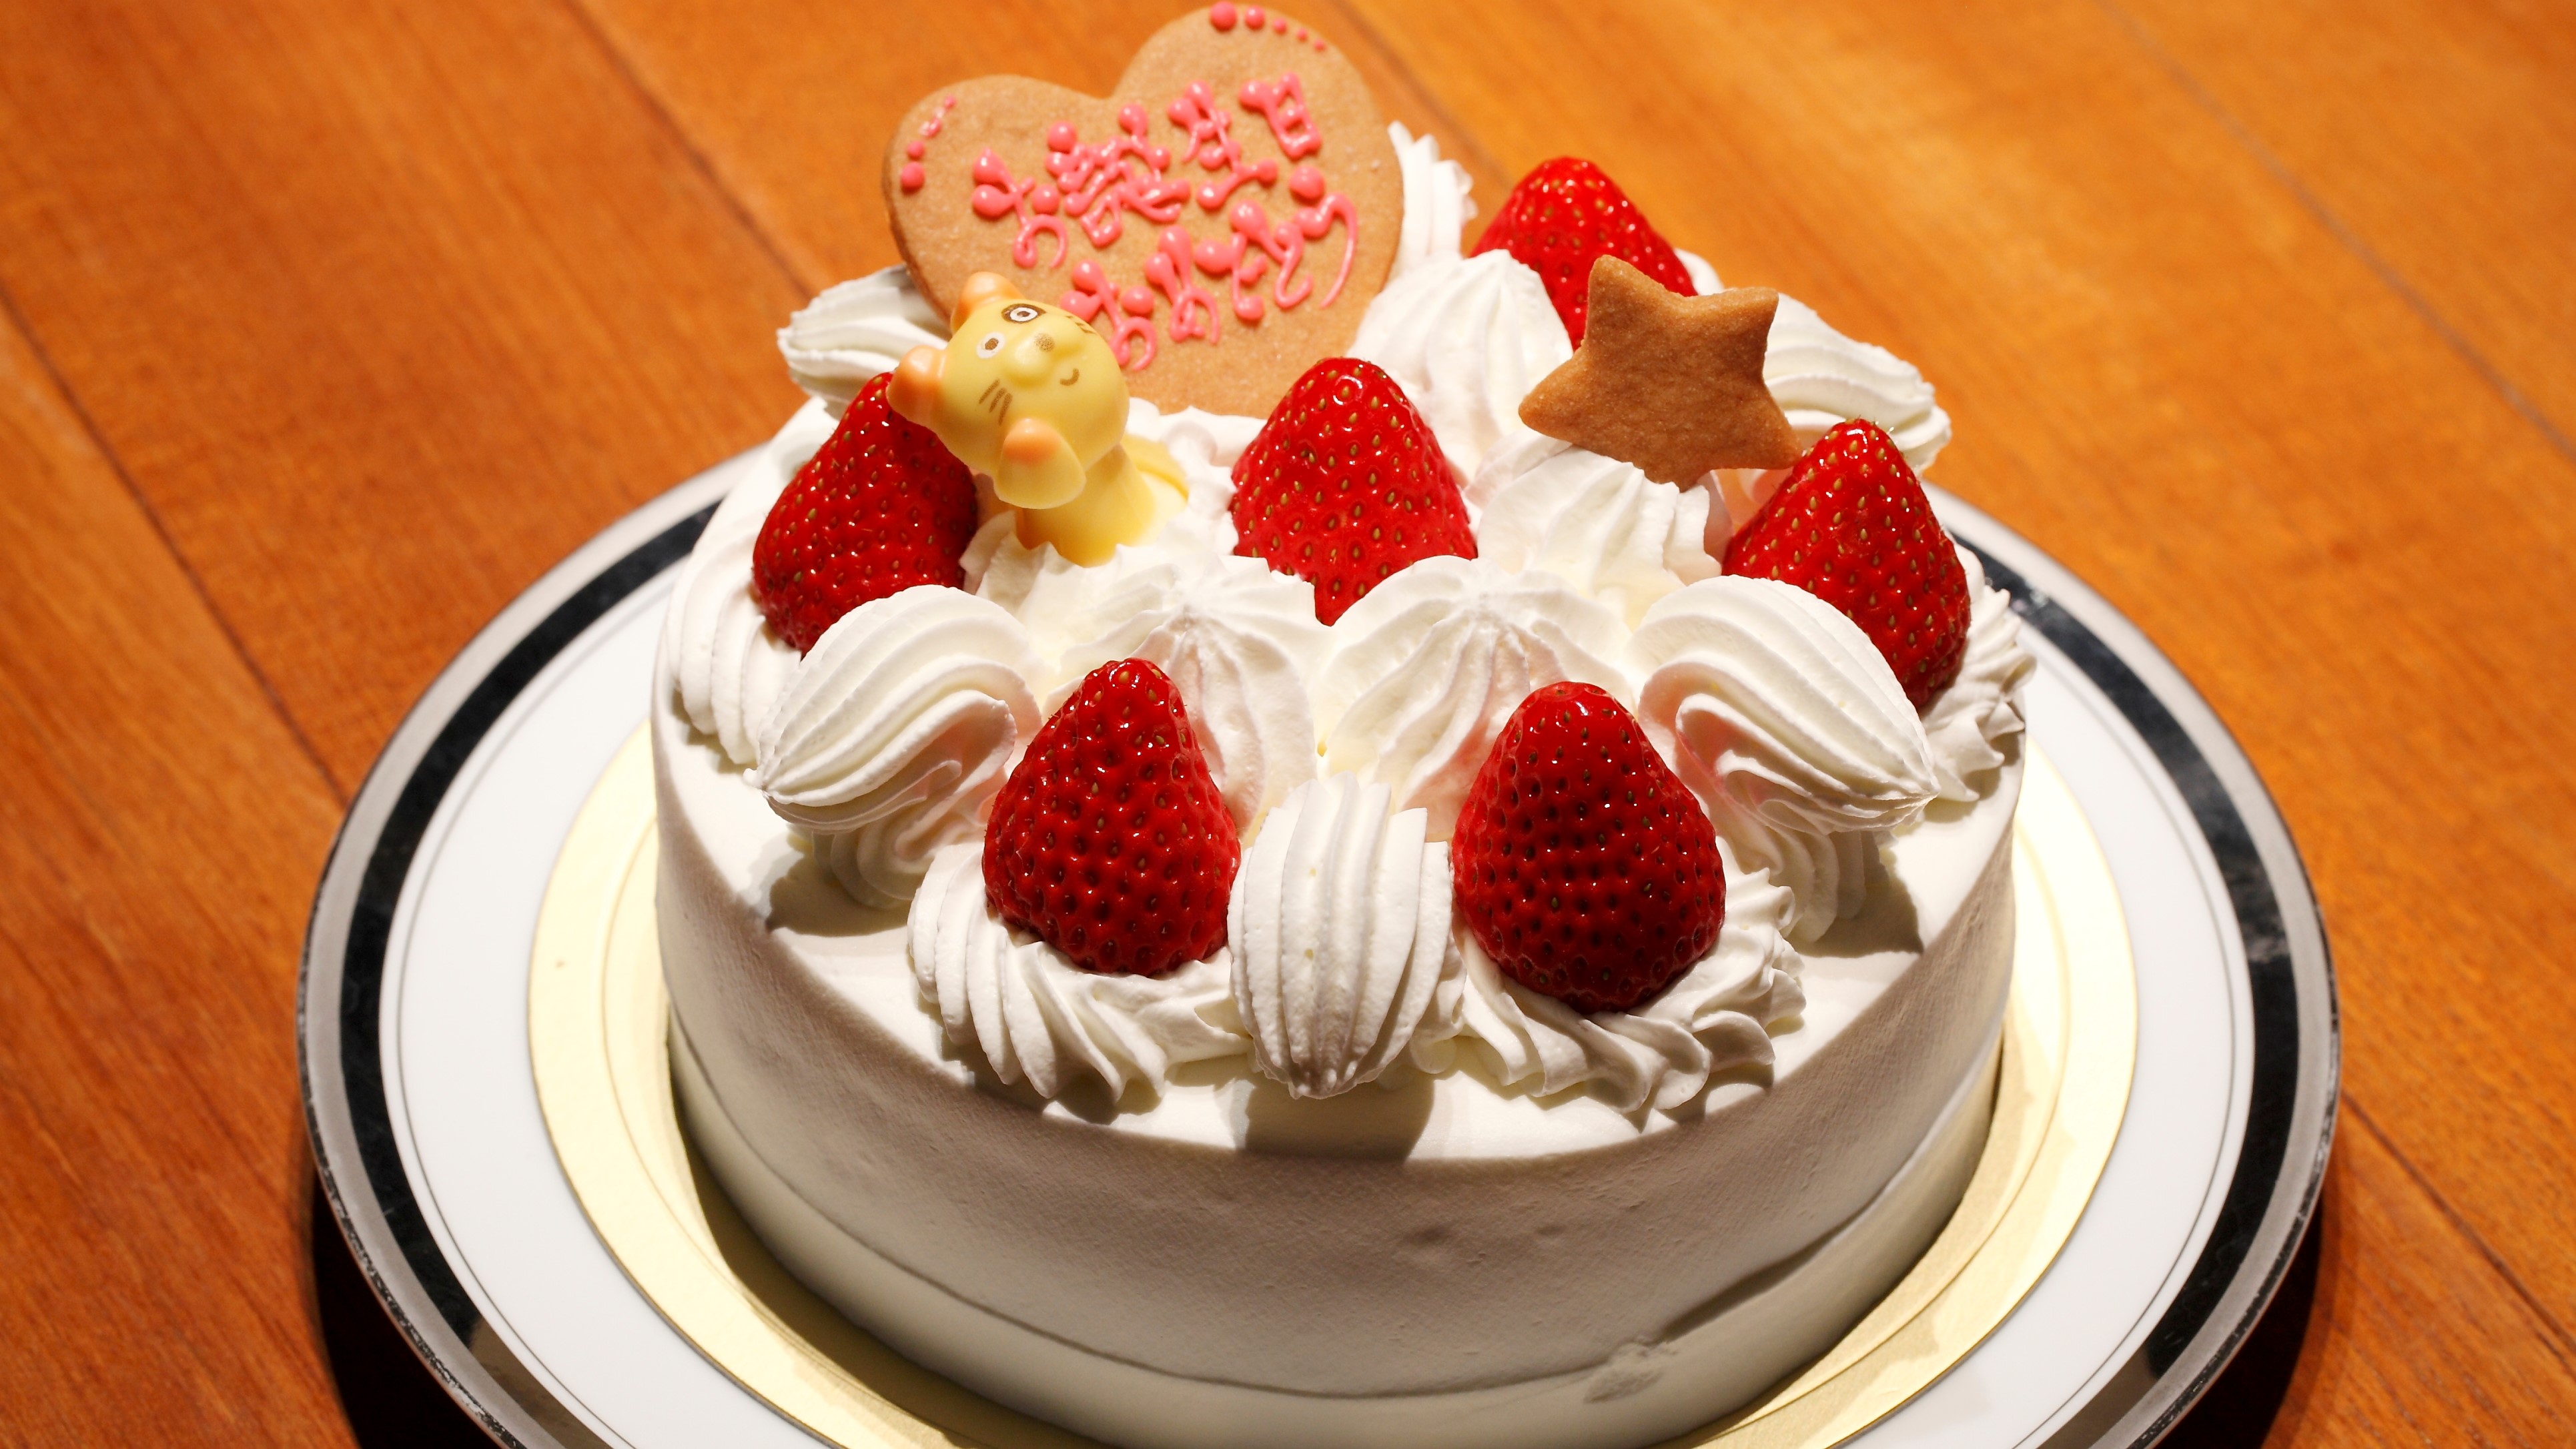 ●【サービス】ホールケーキ